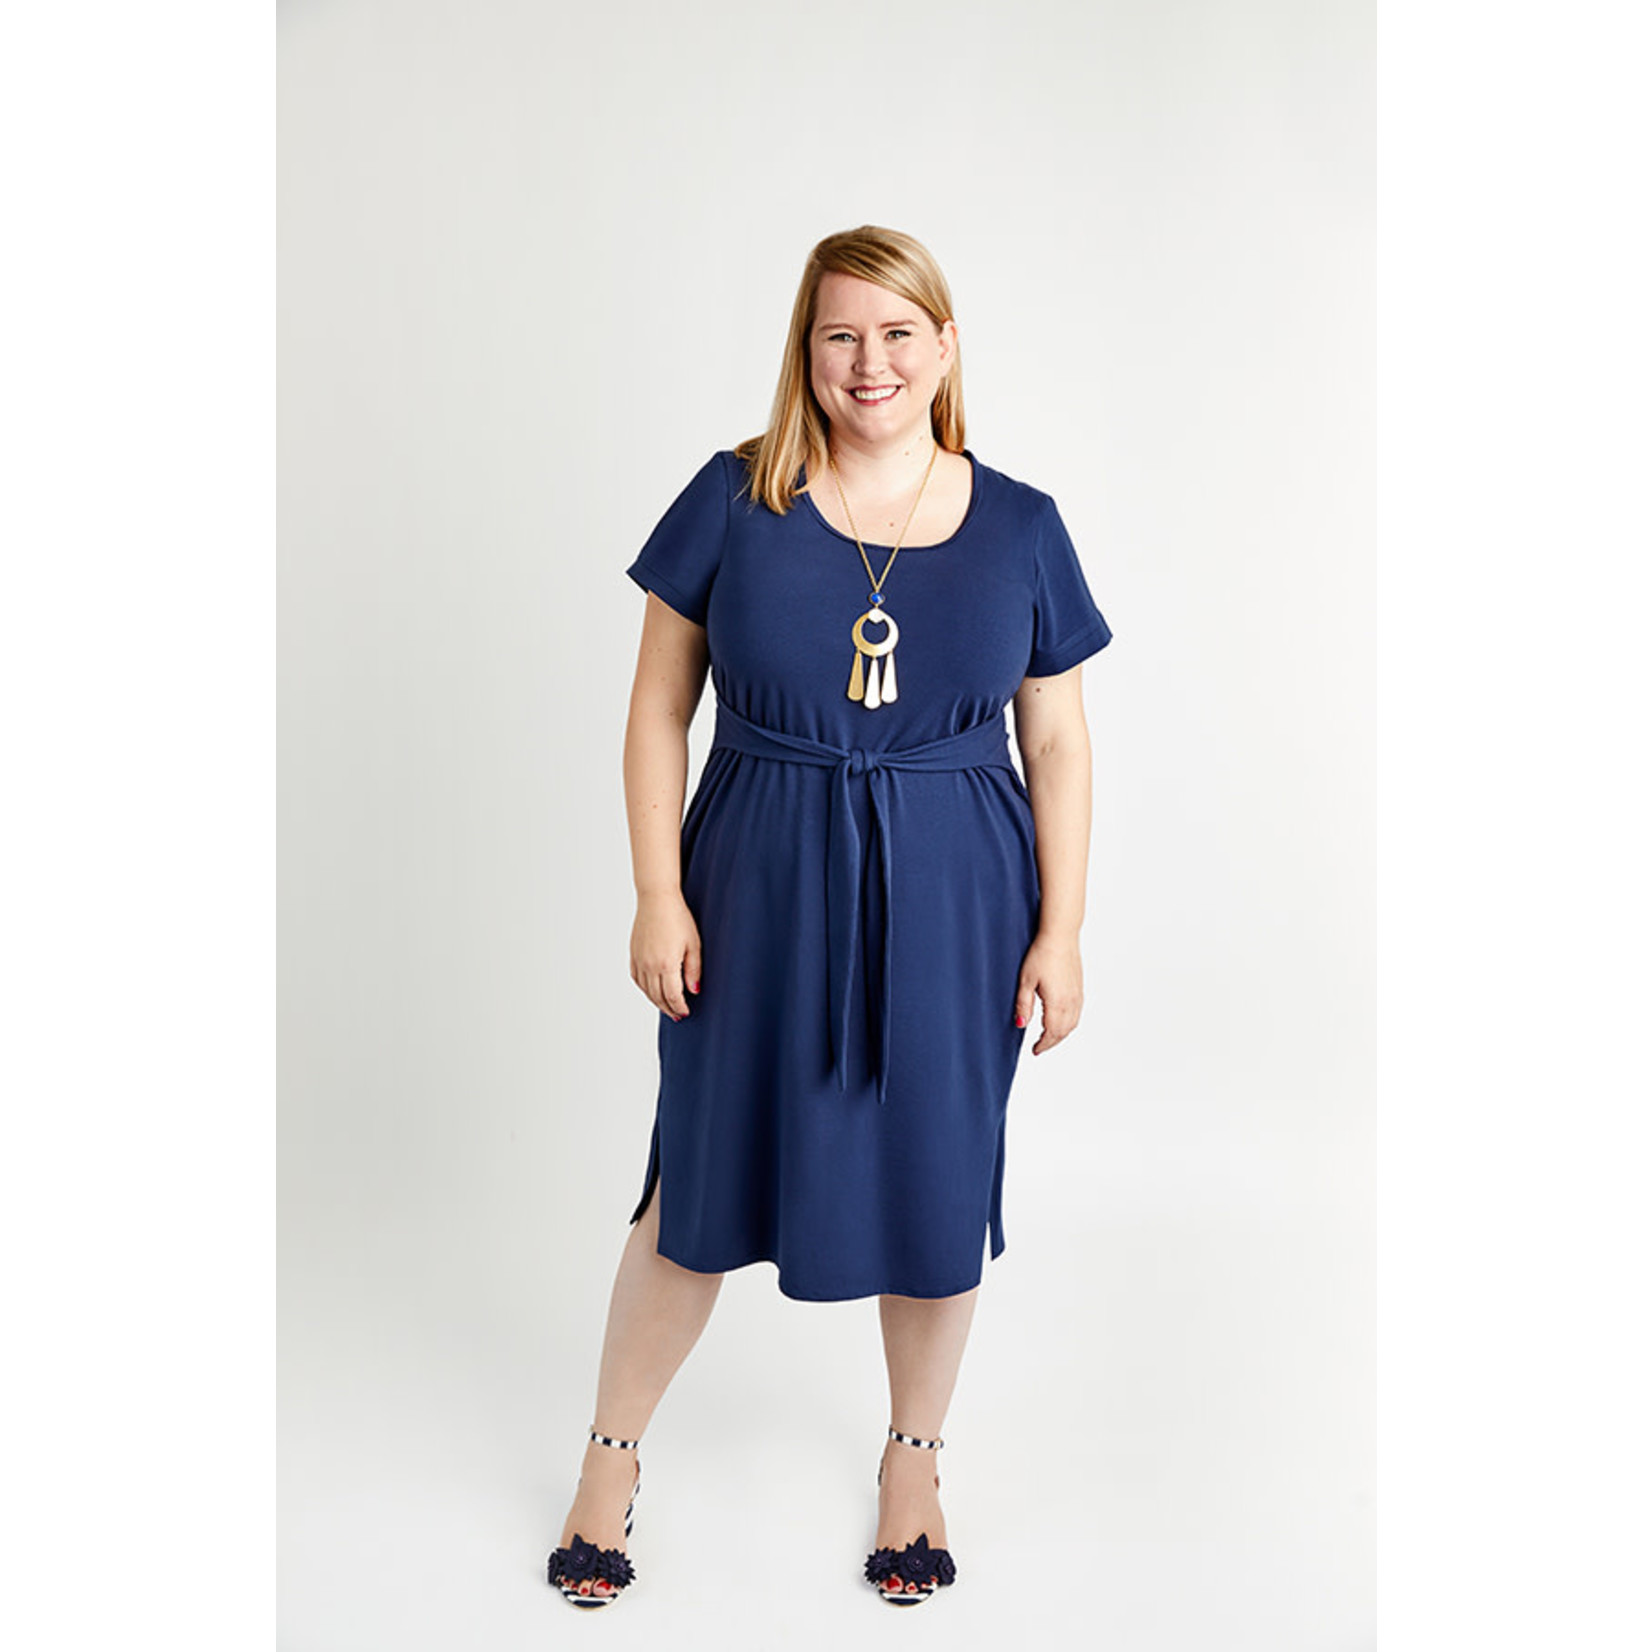 Cashmerette Pembroke Dress & Tunic Pattern 12-28 (Cup C-H)